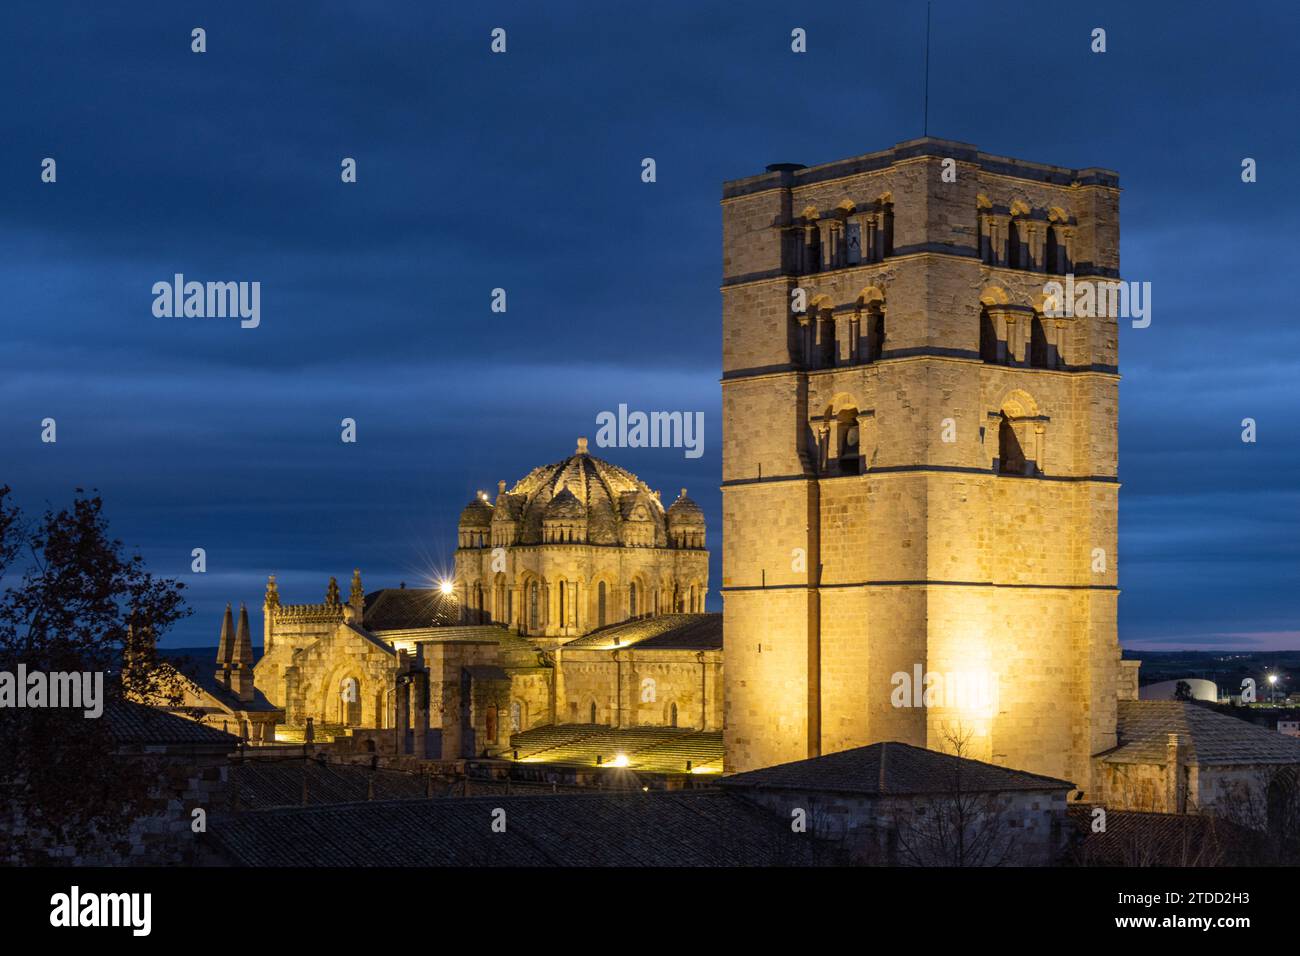 Una almena del castillo de Zamora, es un imponente mirador desde el que contemplar la catedral, espectacular con su iluminación nocturna. España Stock Photo